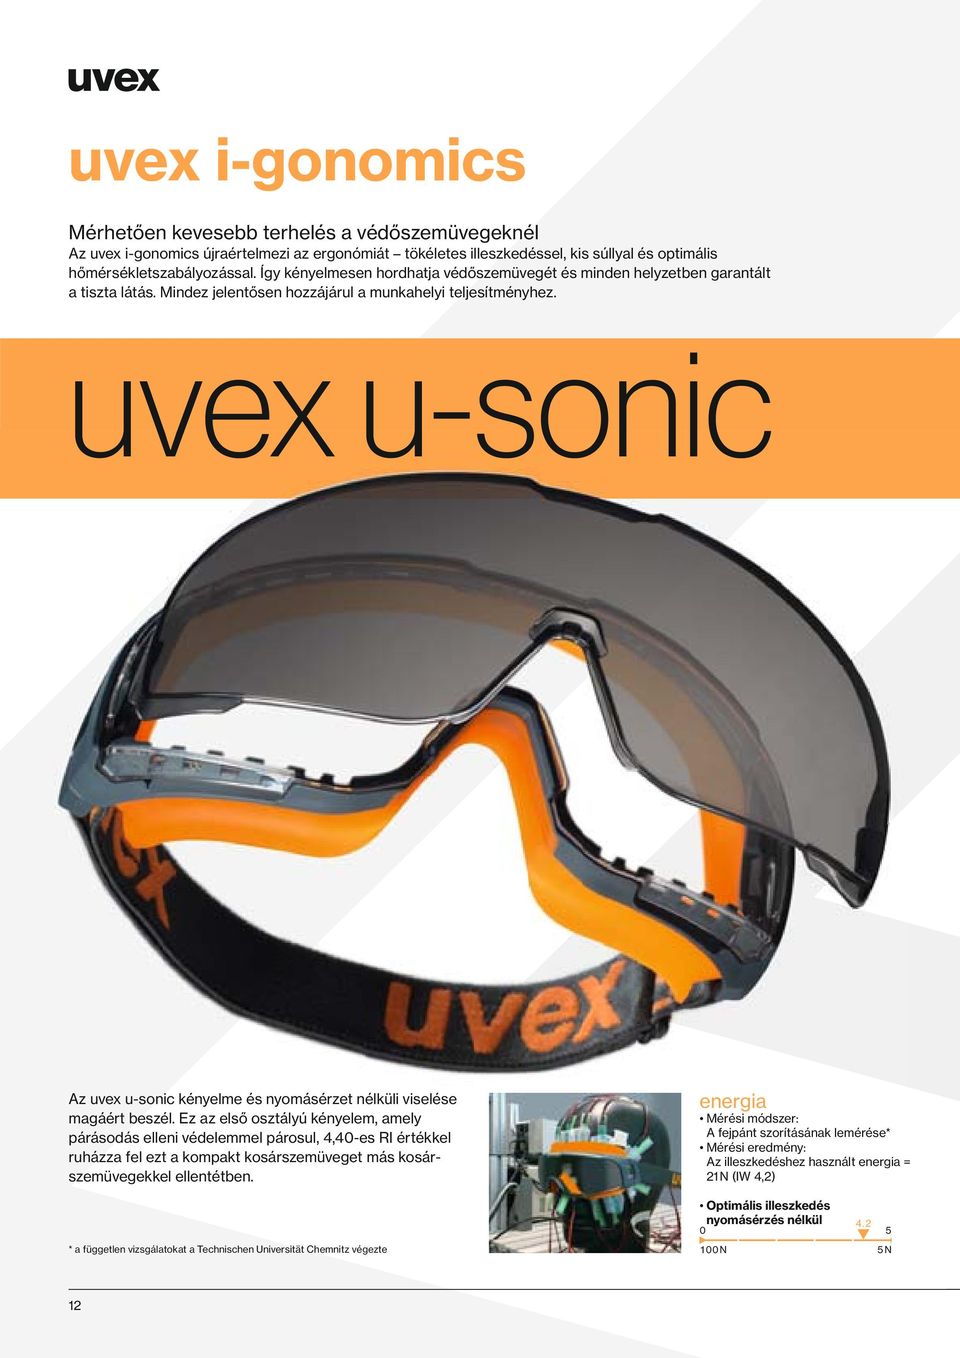 uvex u-sonic Az uvex u-sonic kényelme és nyomásérzet nélküli viselése magáért beszél.